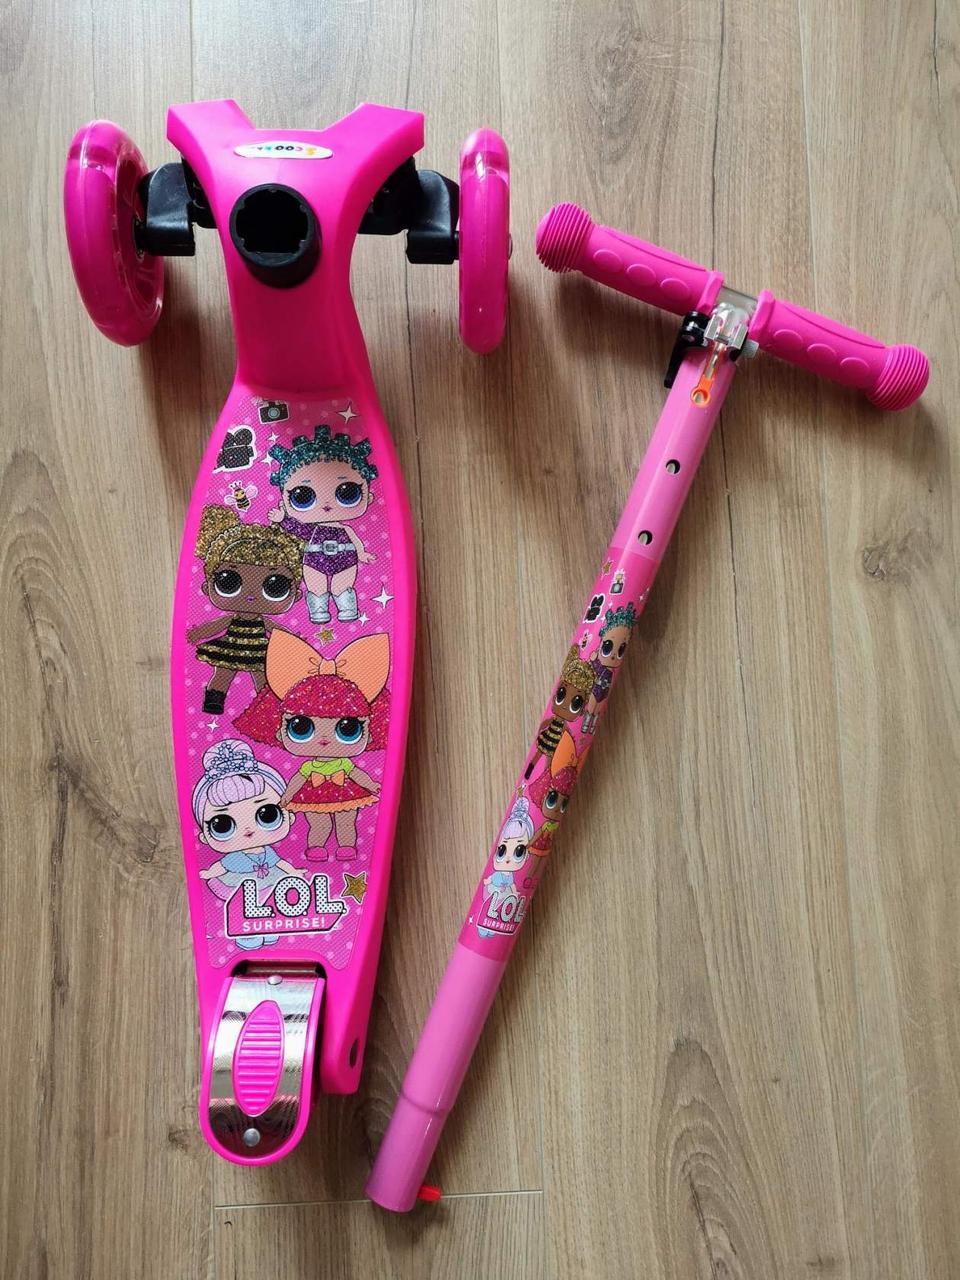 Самокат maxi  Scooter  "LOL" розовый с рисунком КУКЛЫ ЛОЛ  (макси скутер )